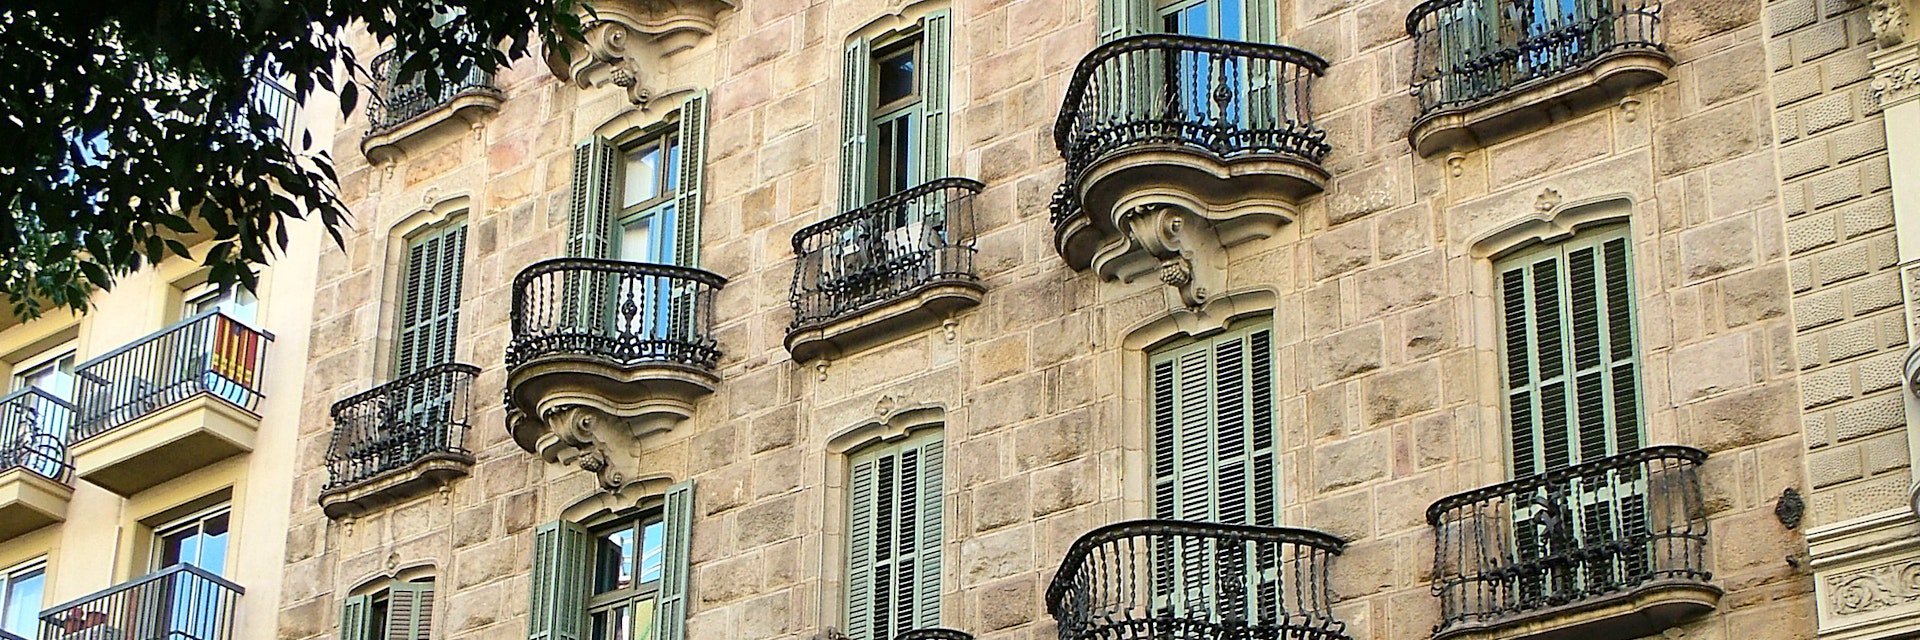 Barcelona, Spain - 28 September 2015 - Calvet House on the street Carrer de Casp.